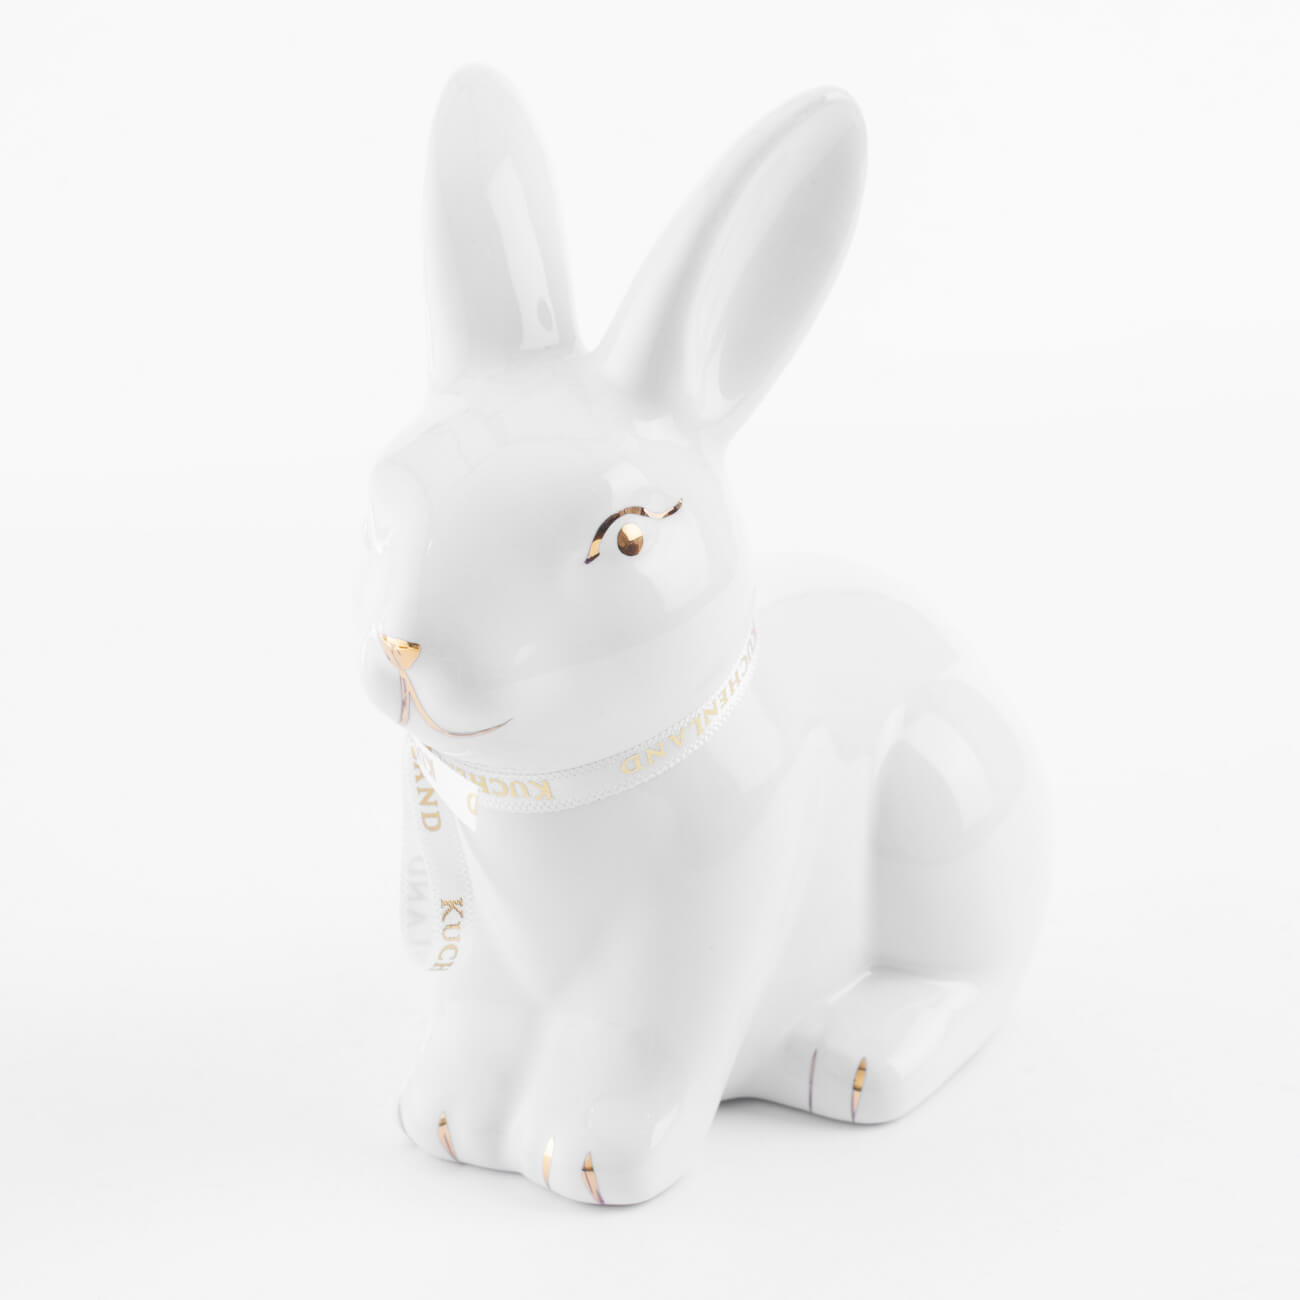 Статуэтка, 13 см, керамика, бело-золотистая, Кролик сидит, Easter gold статуэтка 14 см фарфор p бежевая кролик сидит natural easter